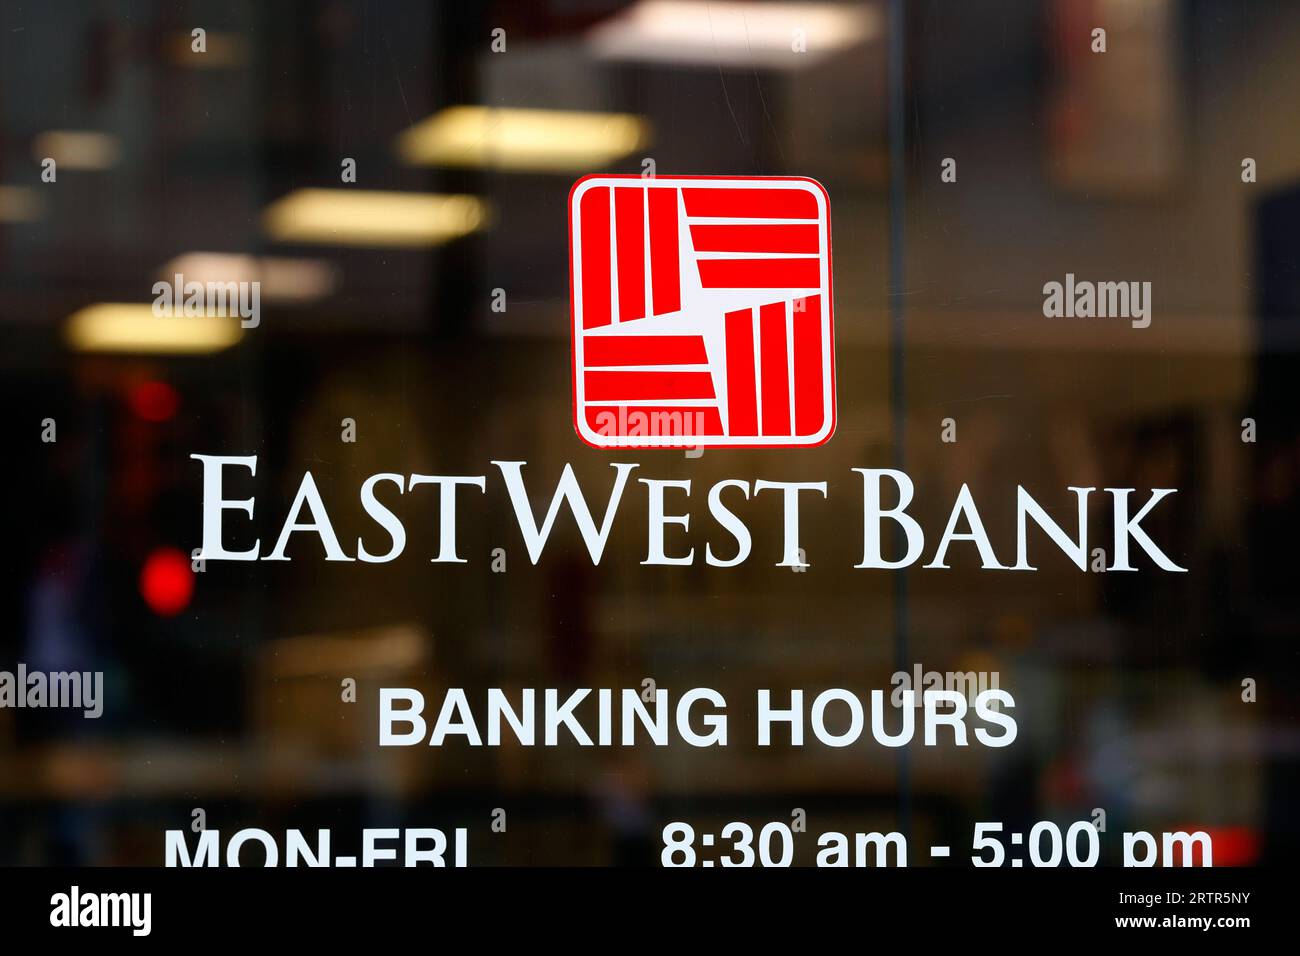 Signalisation pour East West Bank dans une banque à Manhattan Chinatown, New York. Banque D'Images